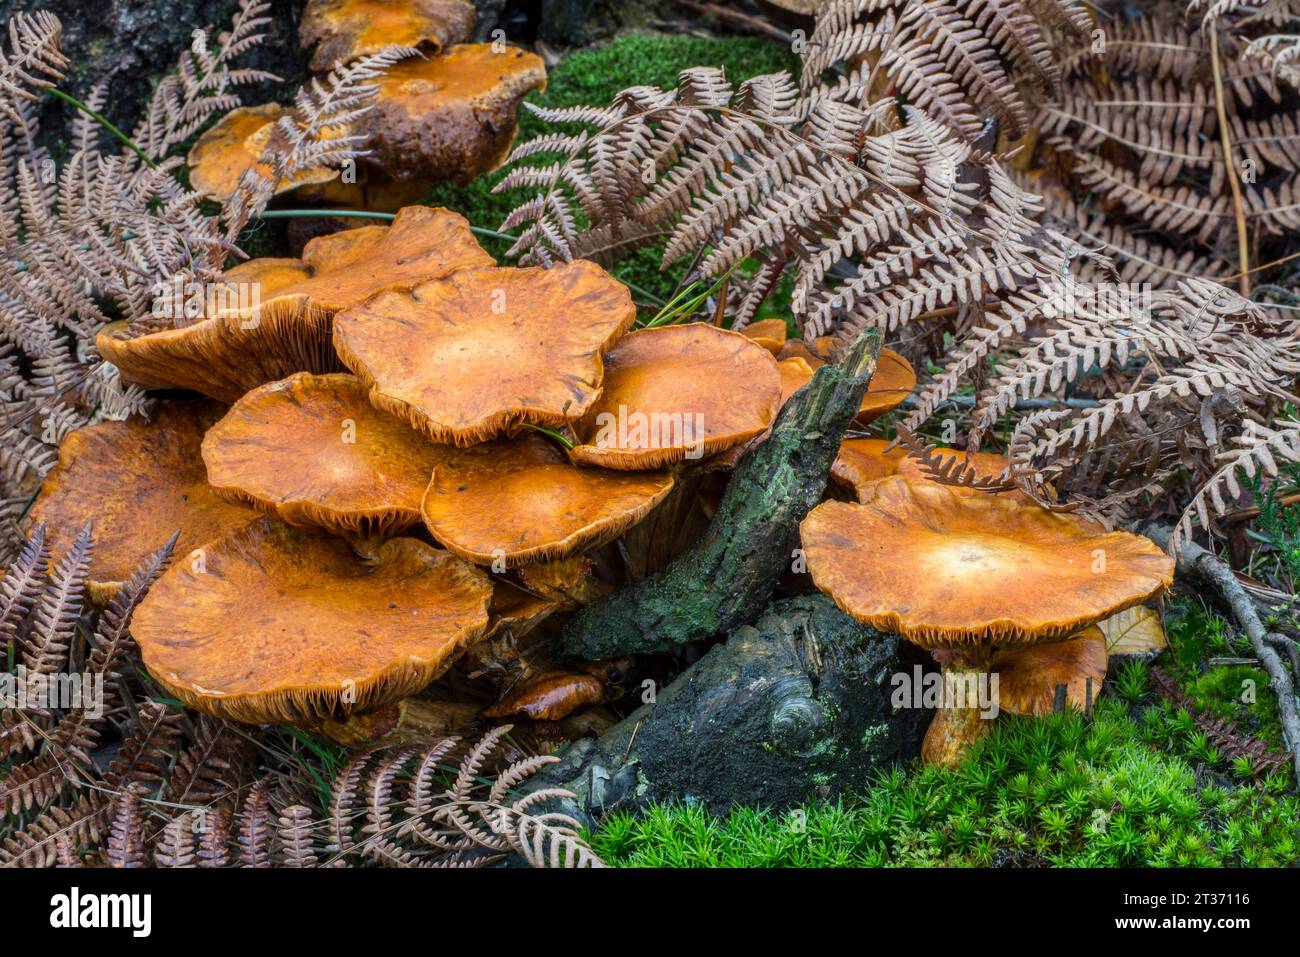 Spectaculaire rugosité / champignon de gymnastique de rire (Gymnopilus junonius / Agaricus aureus / Agaricus junonius) dans la forêt en automne / automne Banque D'Images